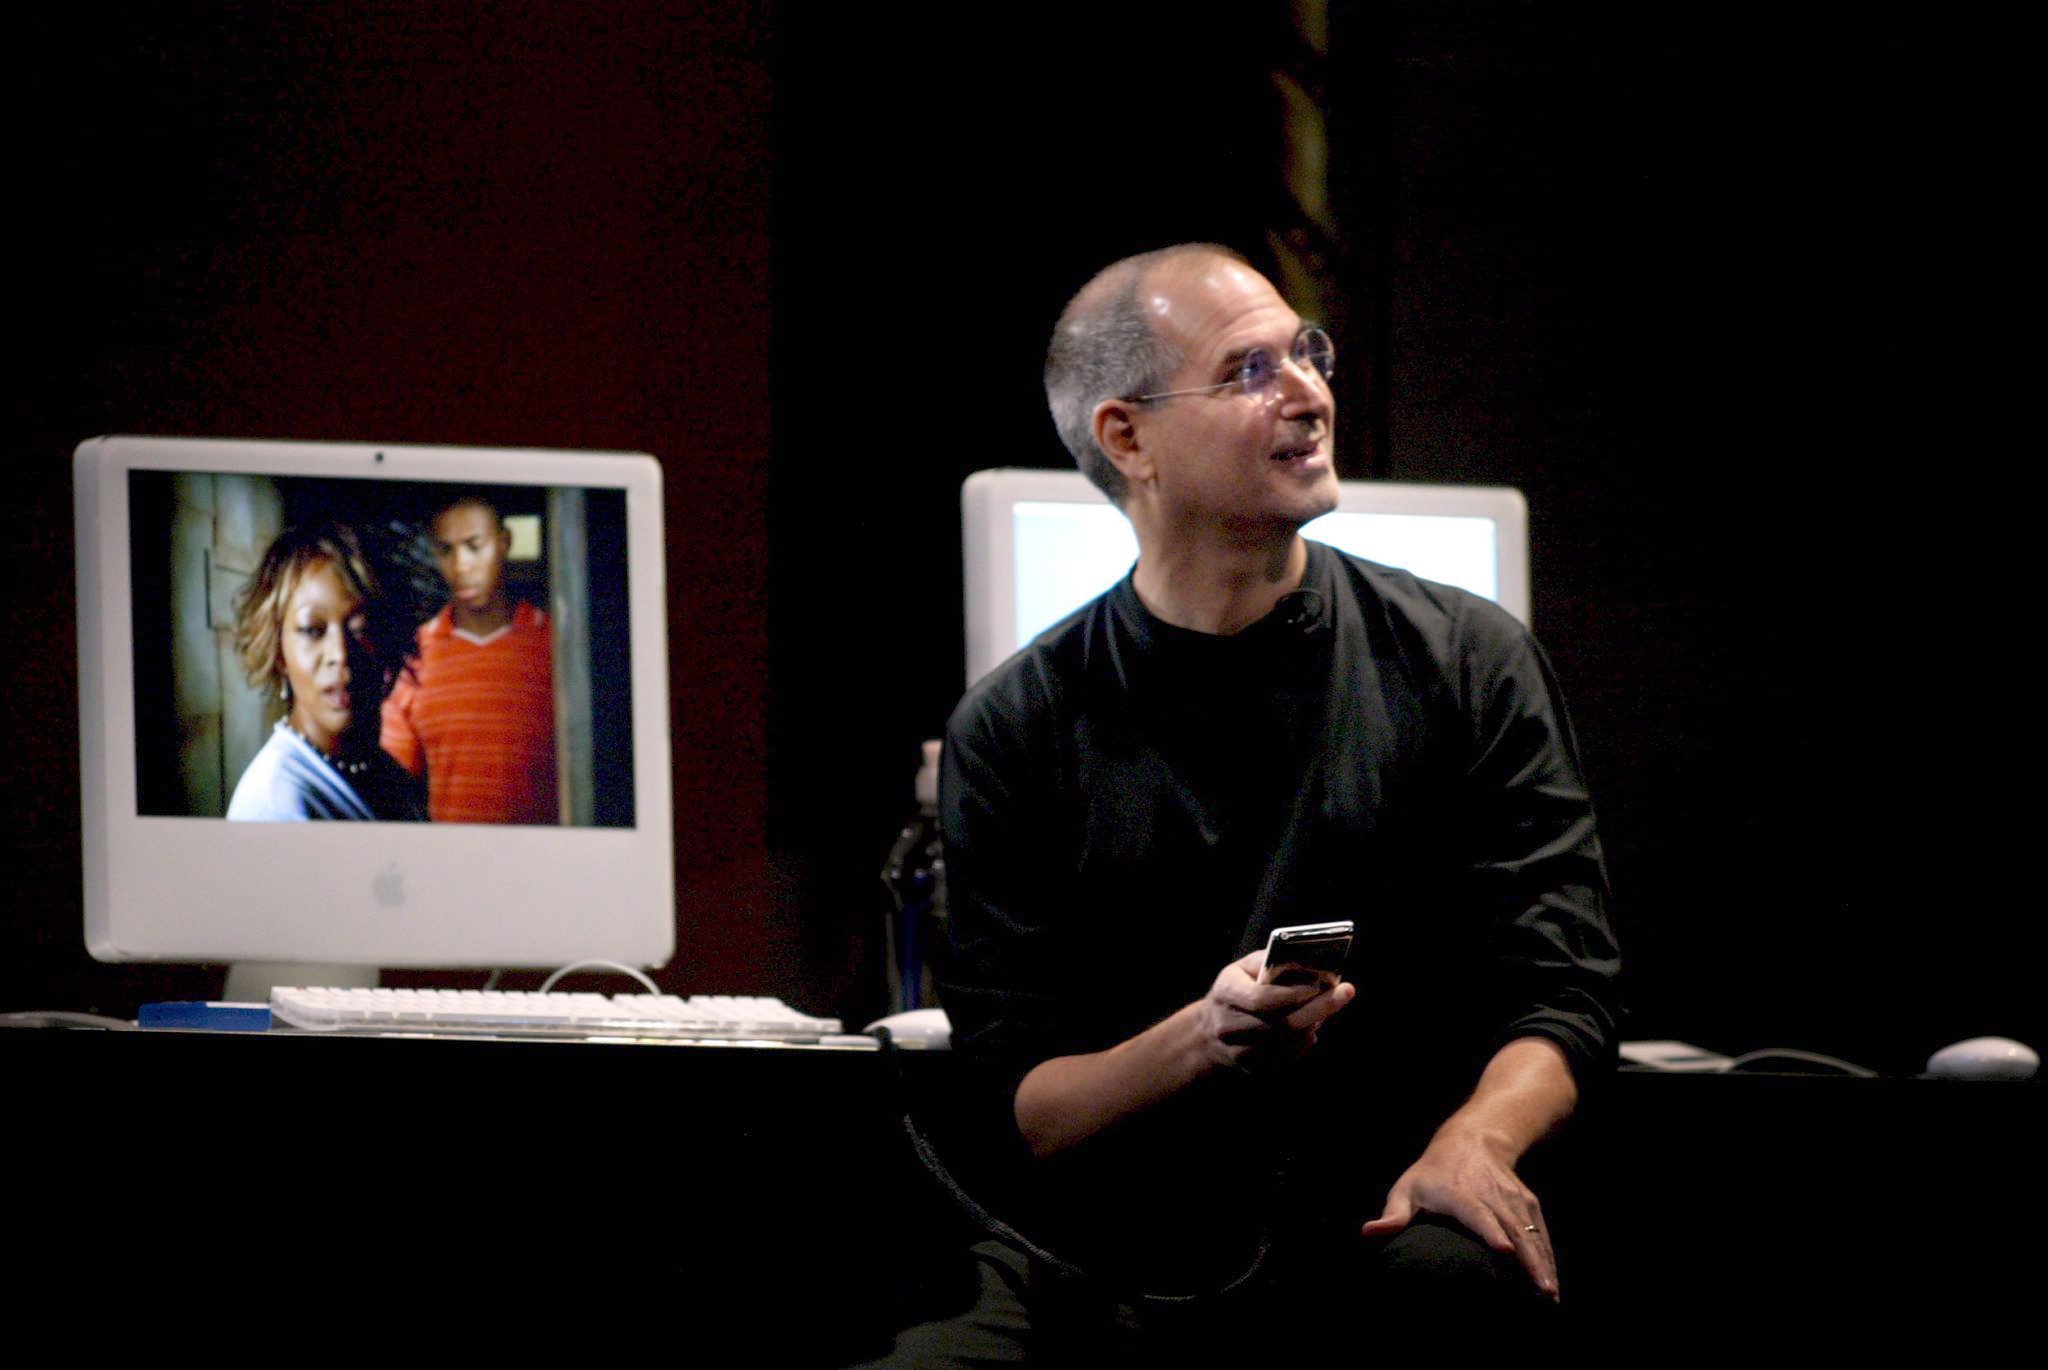 Apple-Gründer Steve Jobs im Jahr 2005: Mit dem iPhone 1 stellte Jobs 1997, ein Jahr nach Nokia, ein Smartphone vor. Das iPhone sollte einen völlig neuen Markt erschließen und unser Kommunikationsverhalten stark verändern.